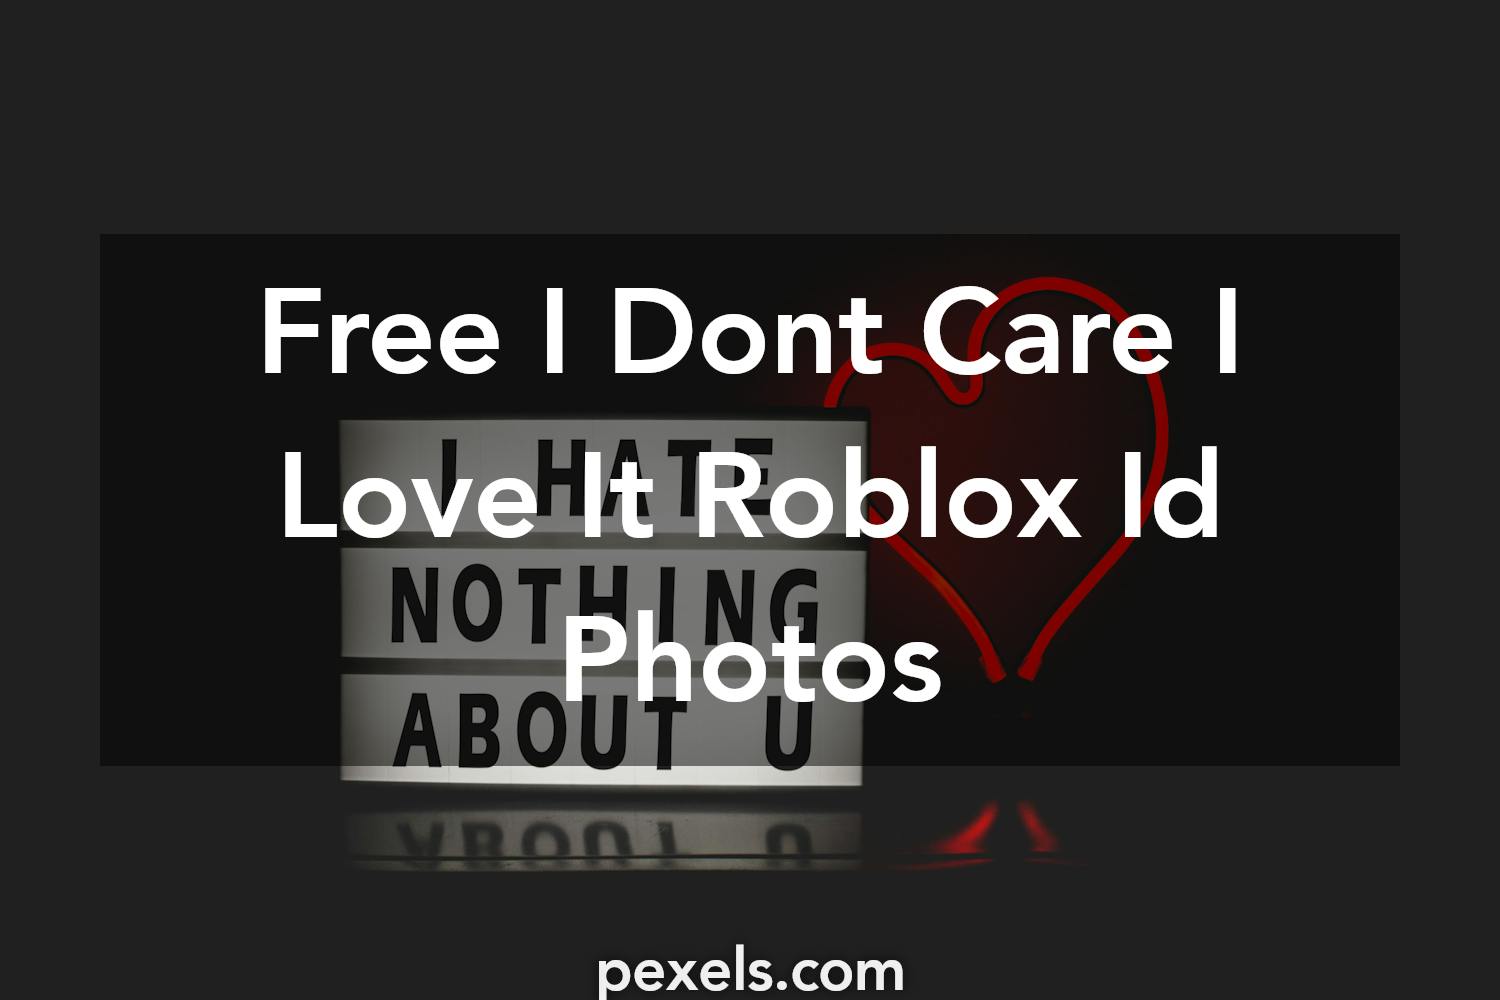 1000 Roblox Ids - roblox id dollhouse